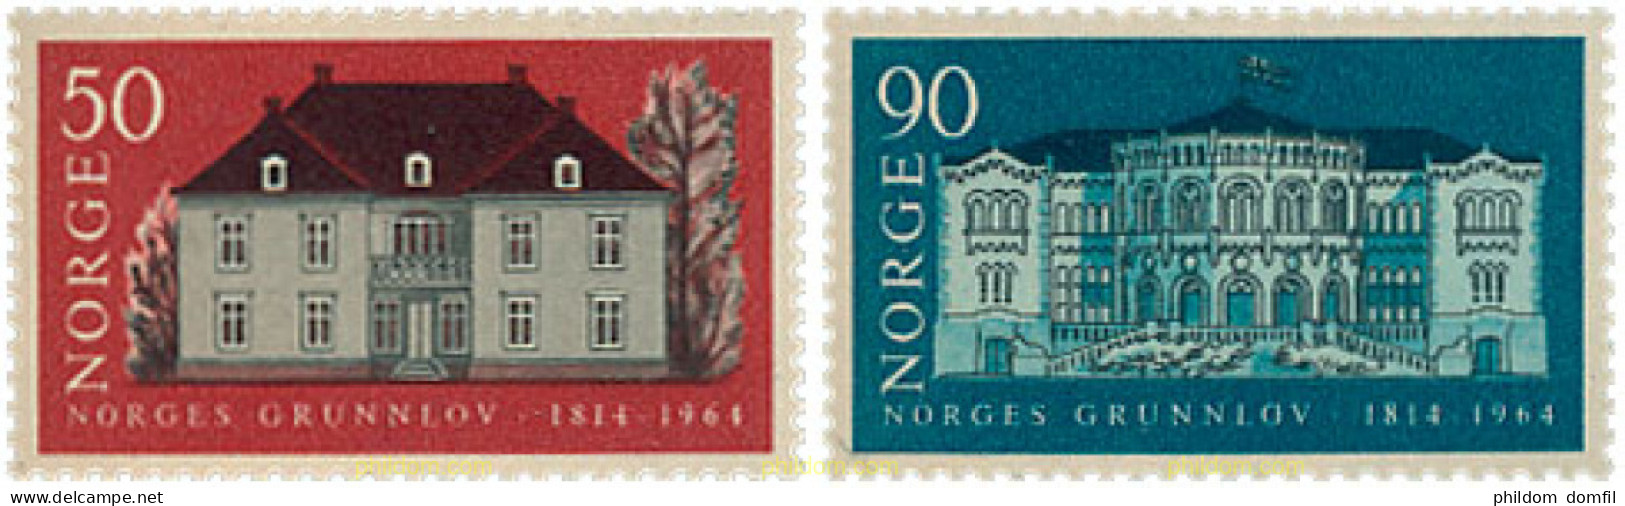 102040 MNH NORUEGA 1964 6 CENTENARIO DE LA CONSTITUCION - Unused Stamps